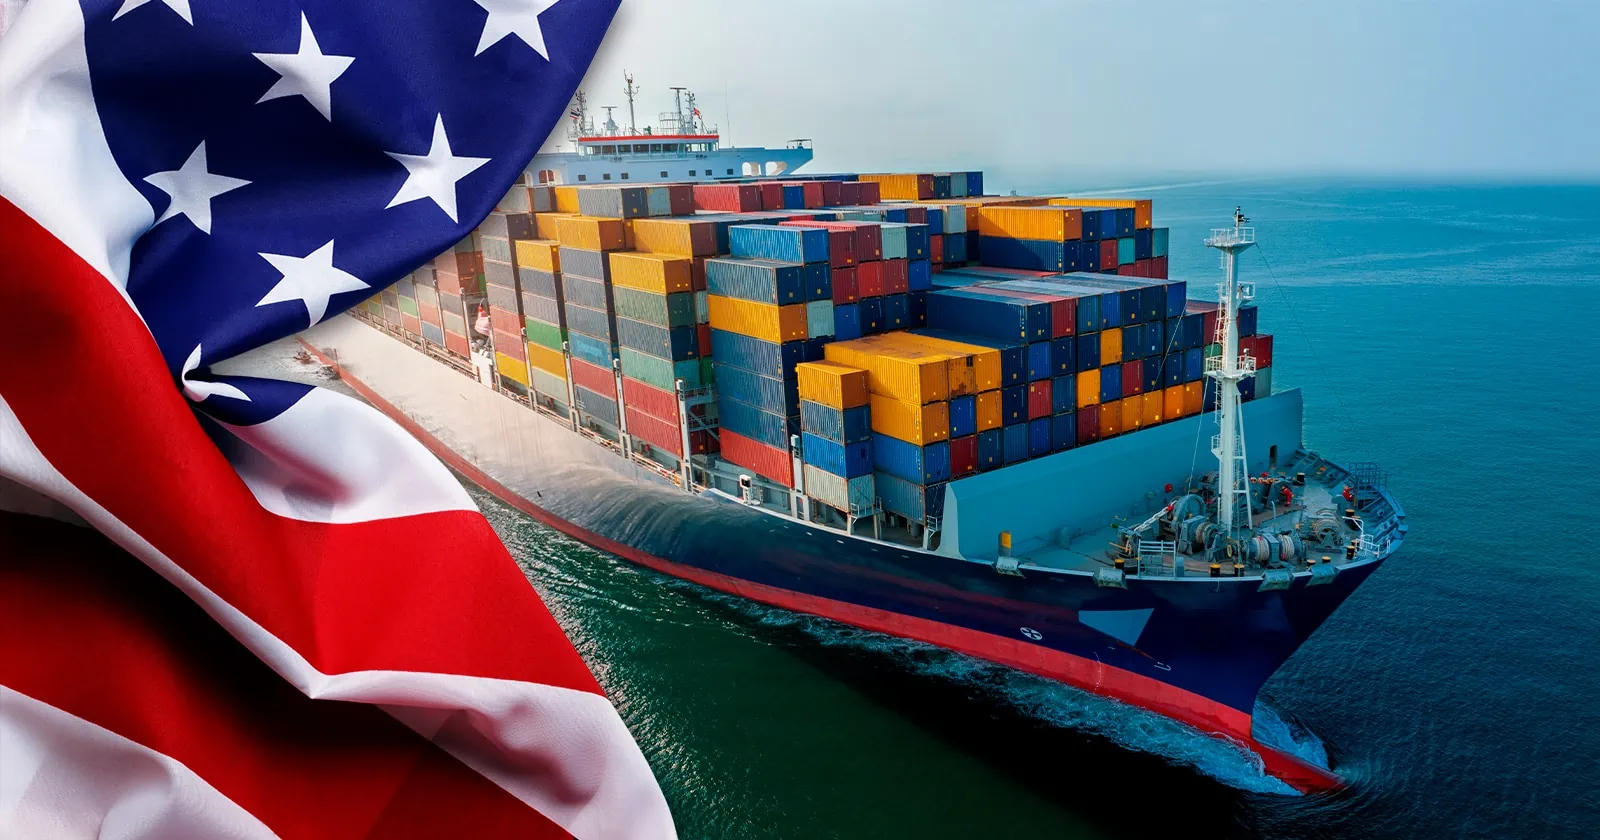 Exportaciones de productos desde Estados Unidos a Cuba: ¿Aumentan o disminuyen?